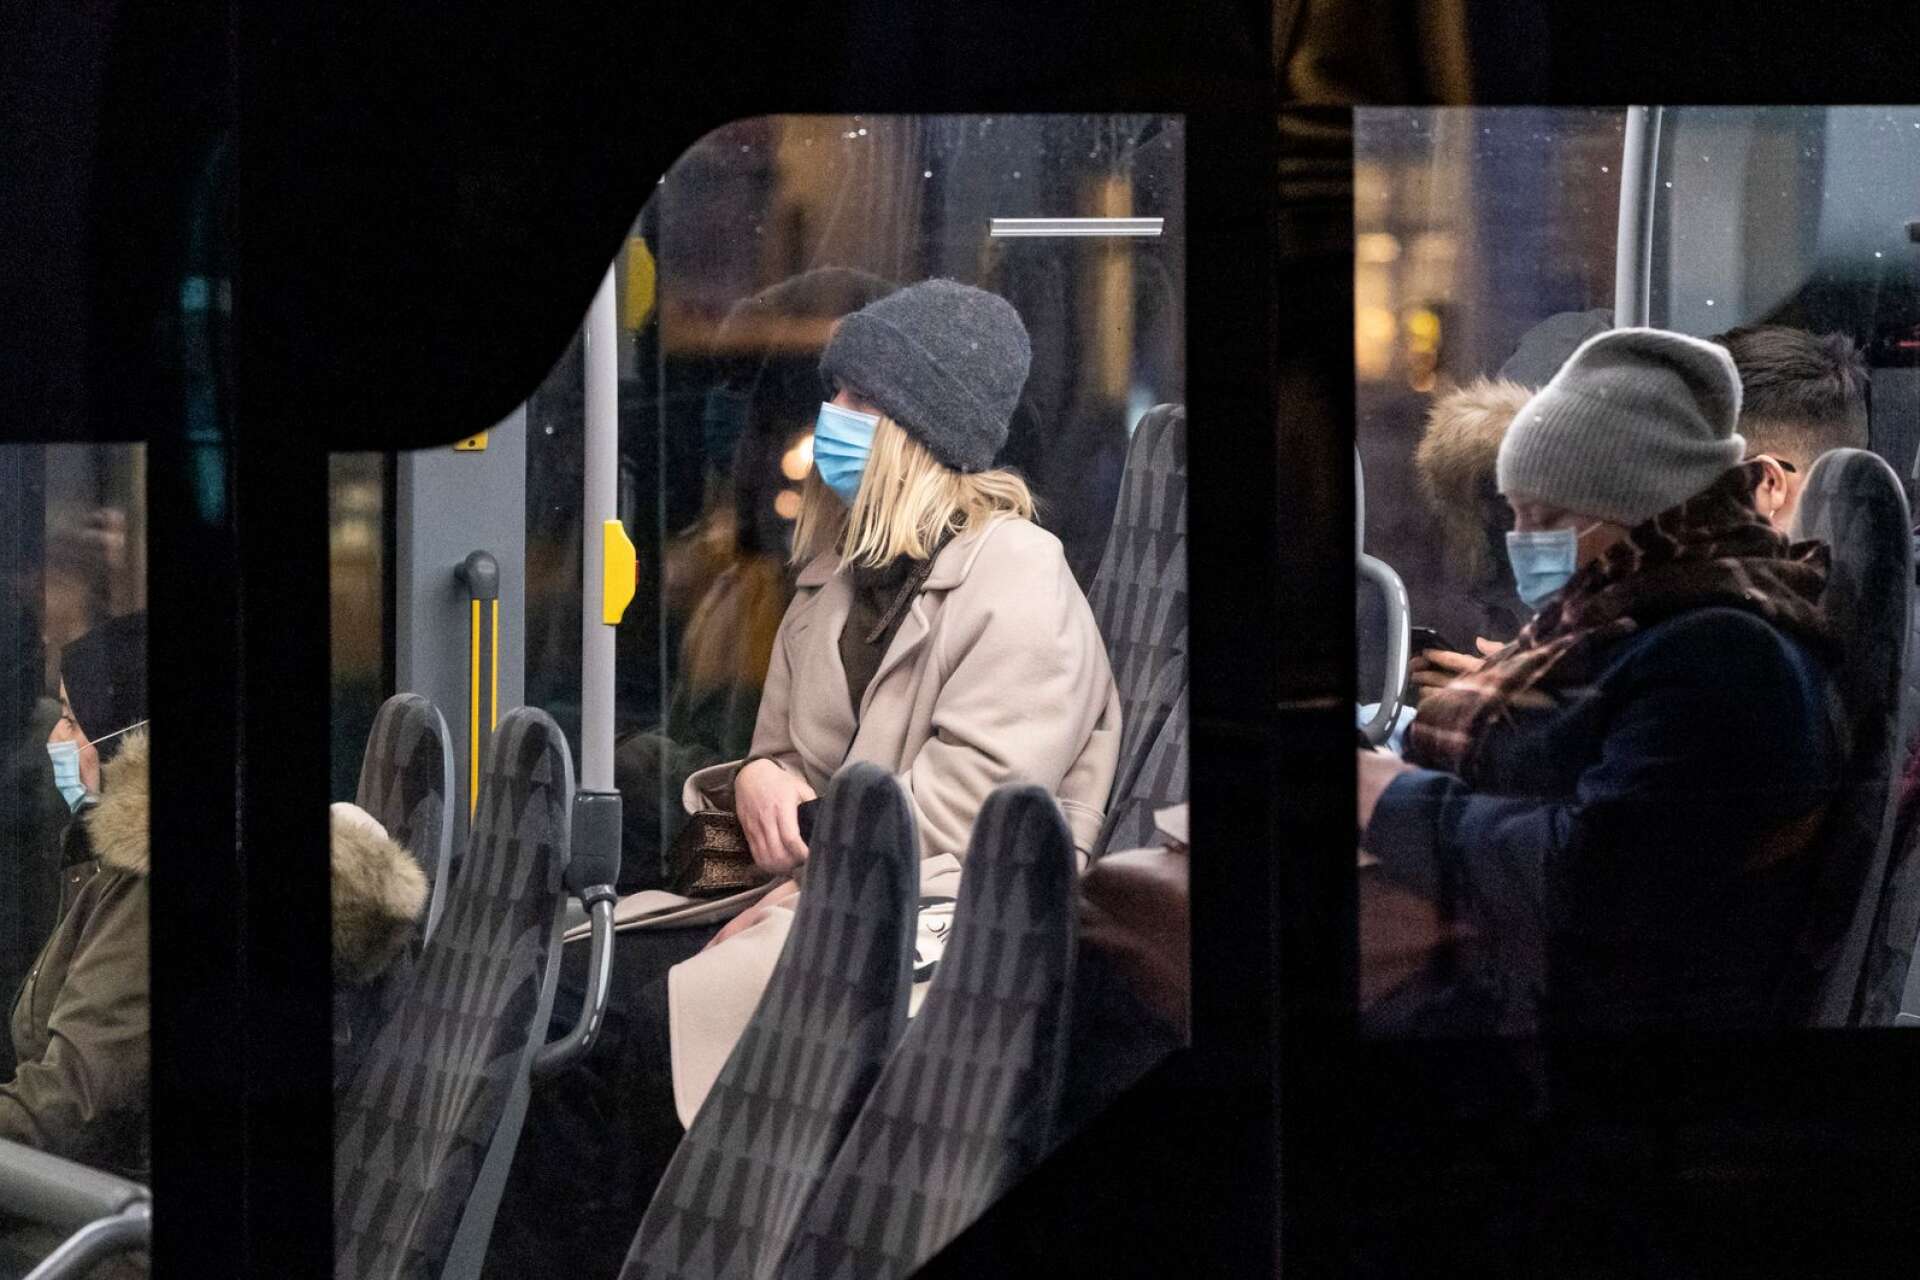 ”Jag trodde man skulle försöka hålla avstånd överallt där det går, och att använda munskydd i kollektivtrafiken”, skriver insändarskribenten.